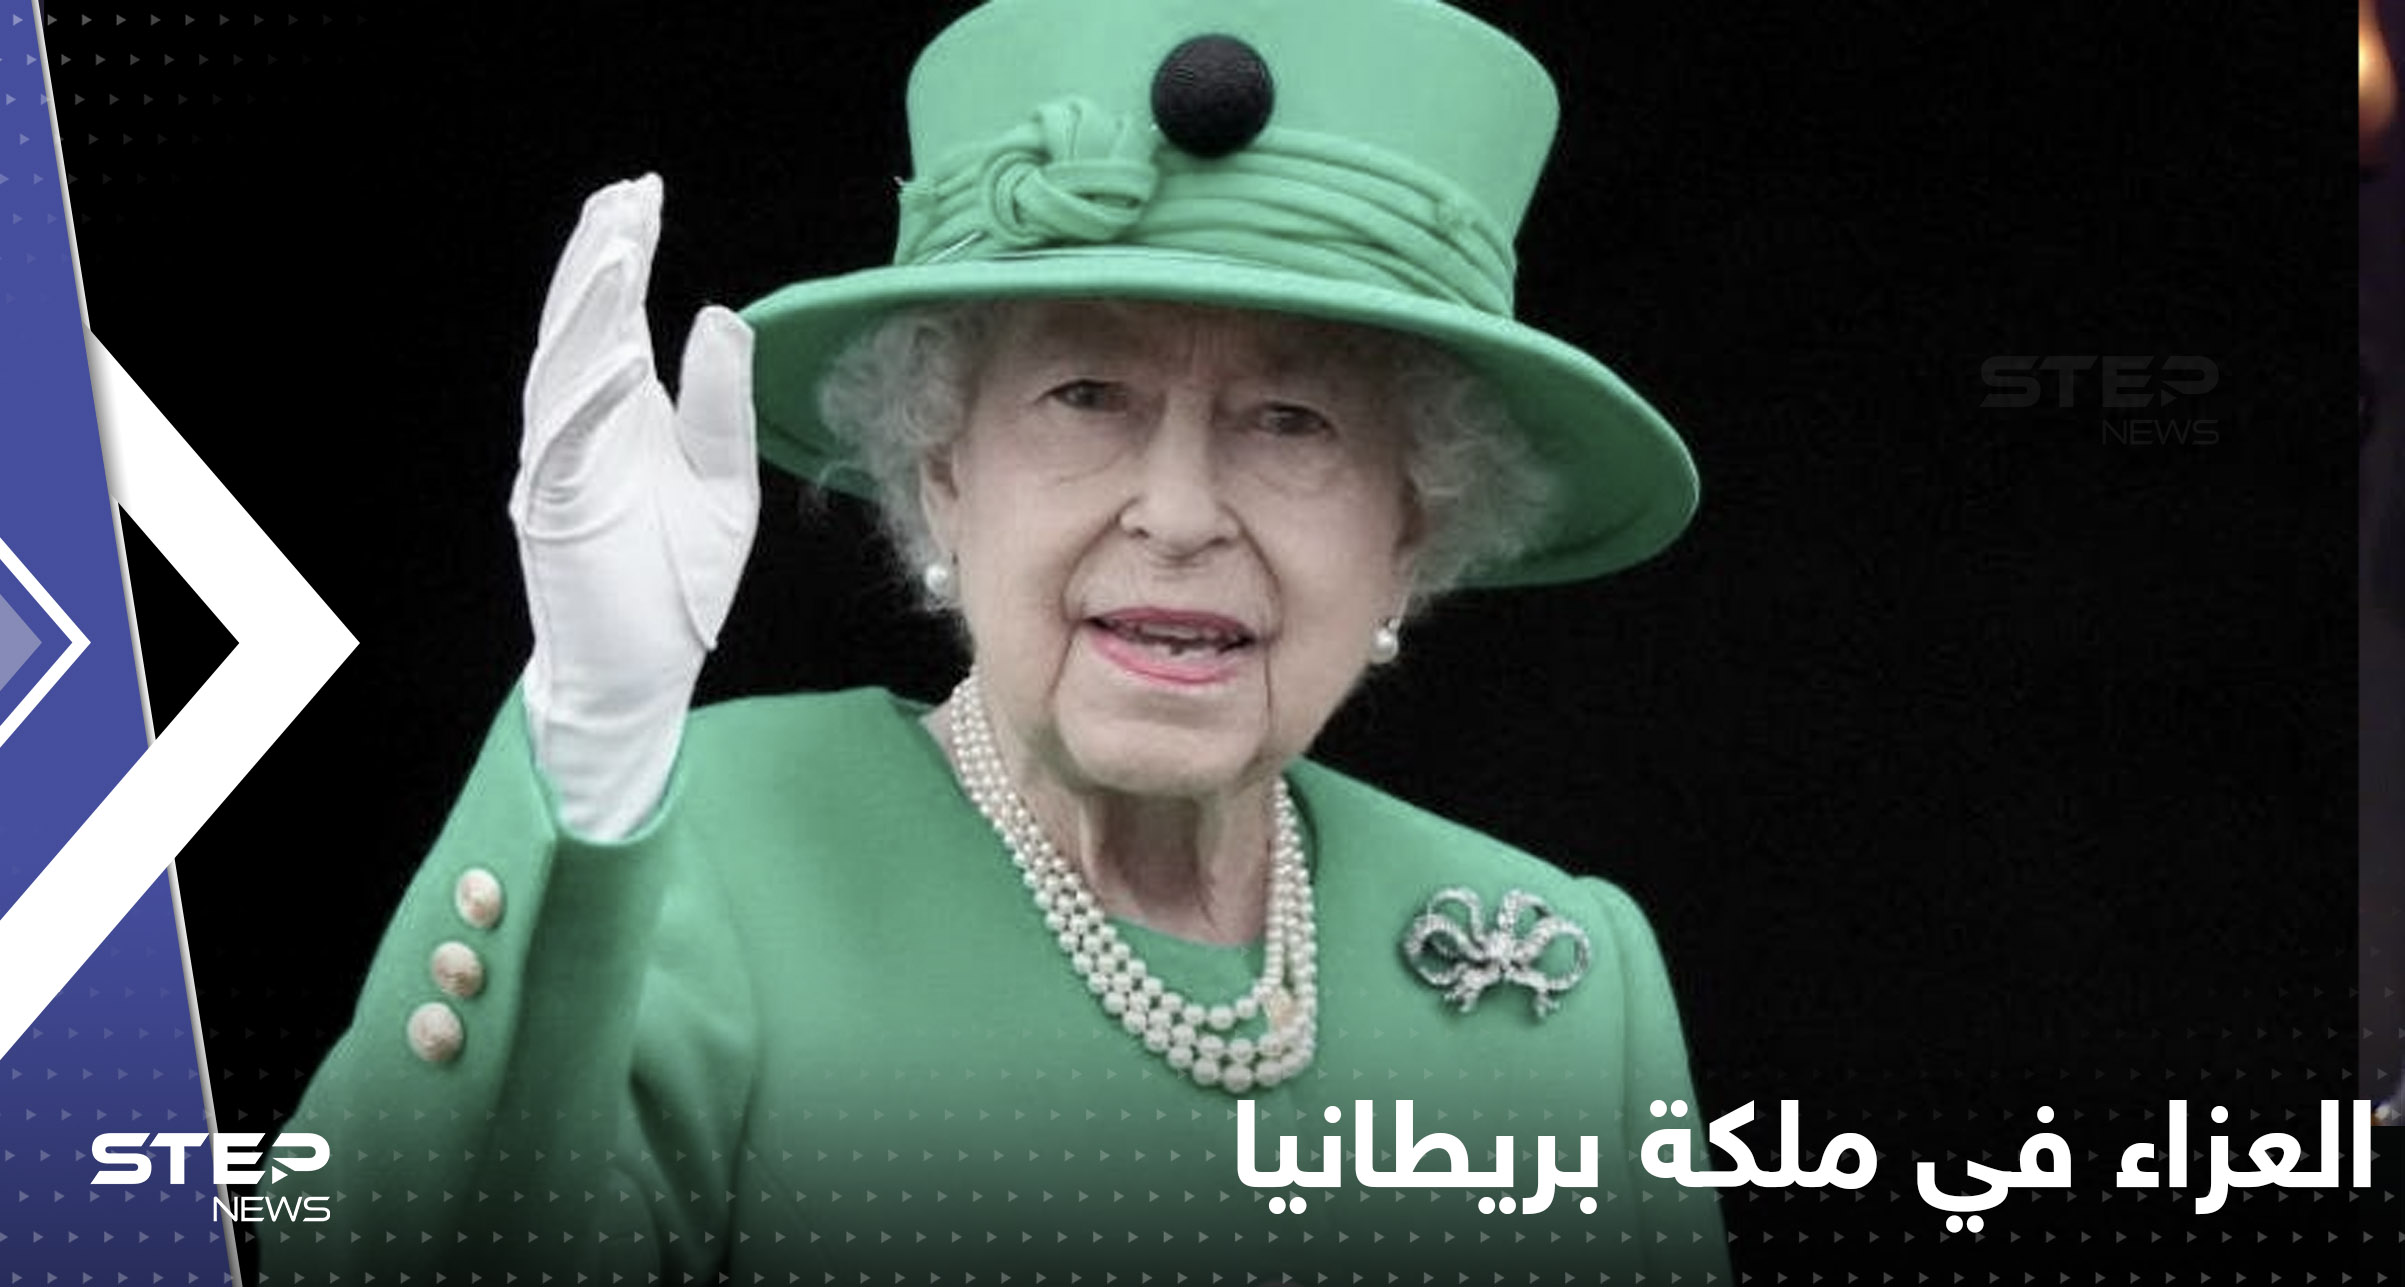 دول عربية وعالمية تعزي بريطانيا برحيل الملكة إليزابيث بعد 7 عقود من الحكم